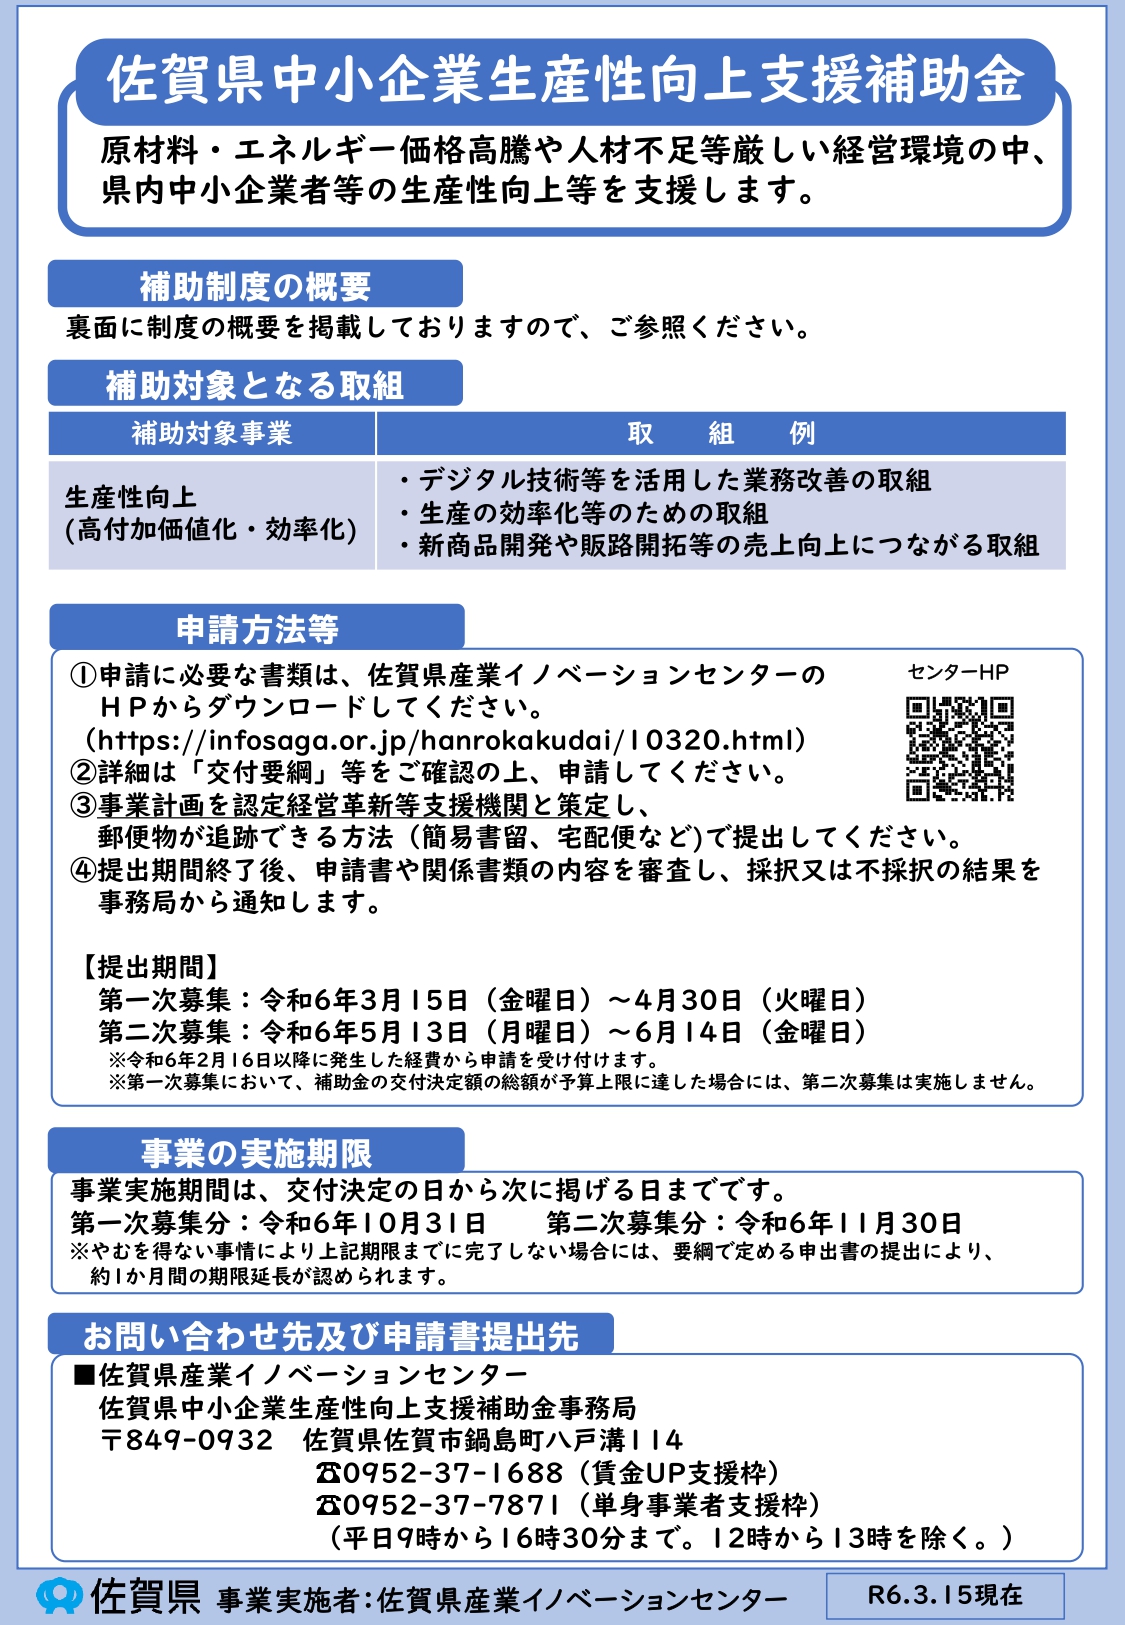 佐賀県中小企業生産性向上支援補助金の公募開始について